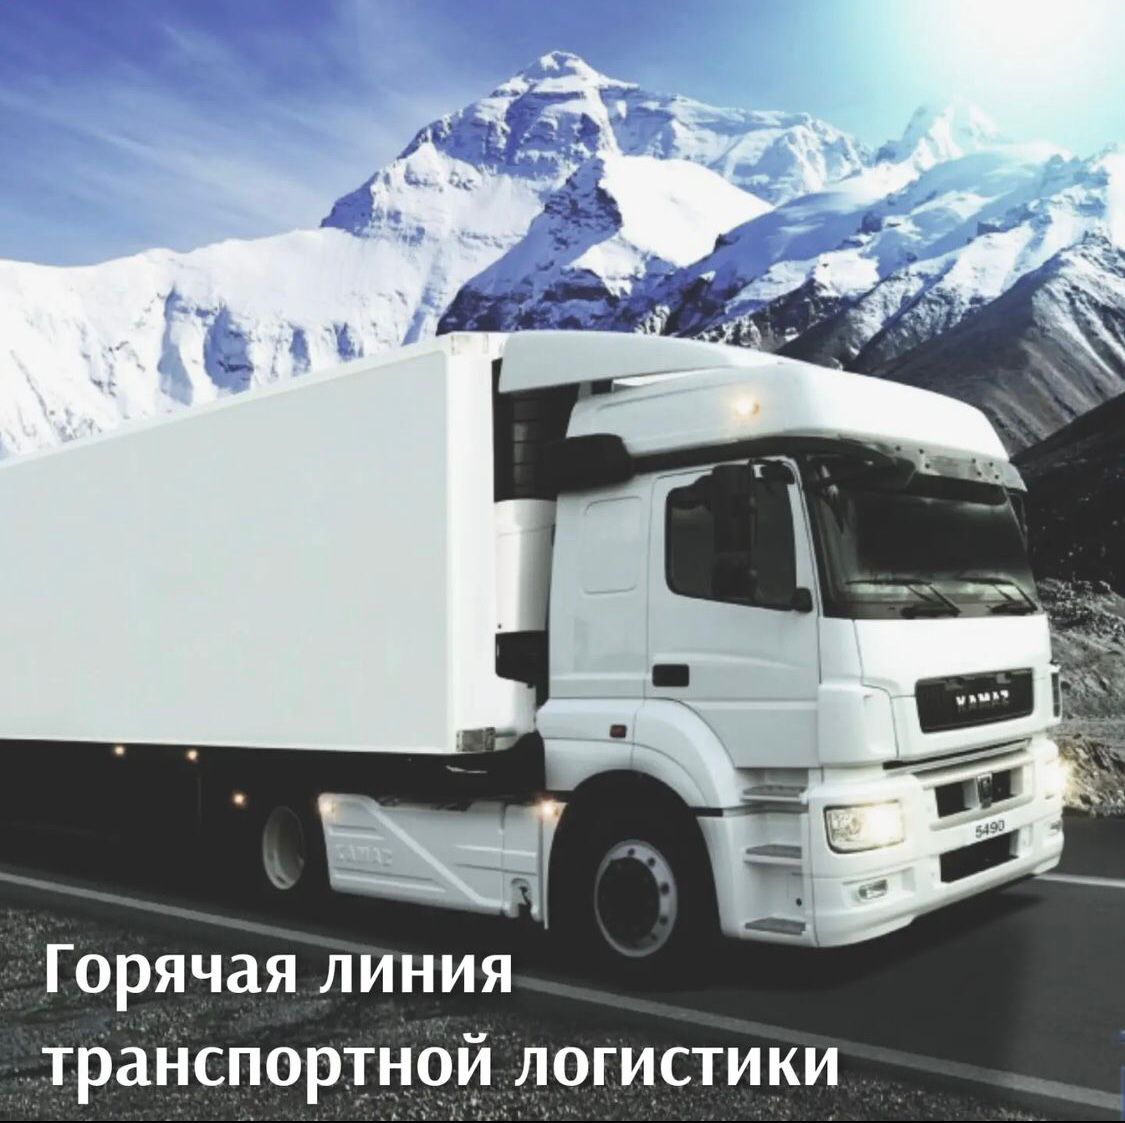 Для поддержания бесперебойной доставки международных грузов Минтранс России сегодня открыл «горячую линию» оперативного ситуационного центра по обеспечению транспортной логистики.